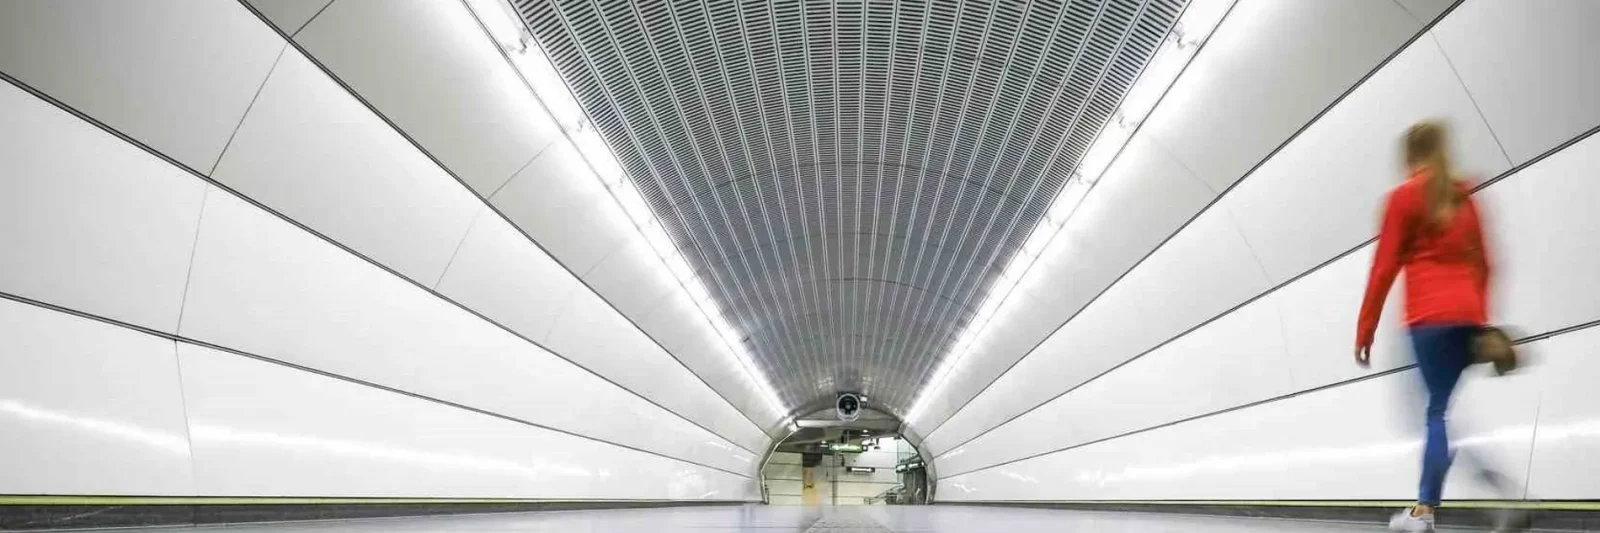 Tunnel Hintergrund